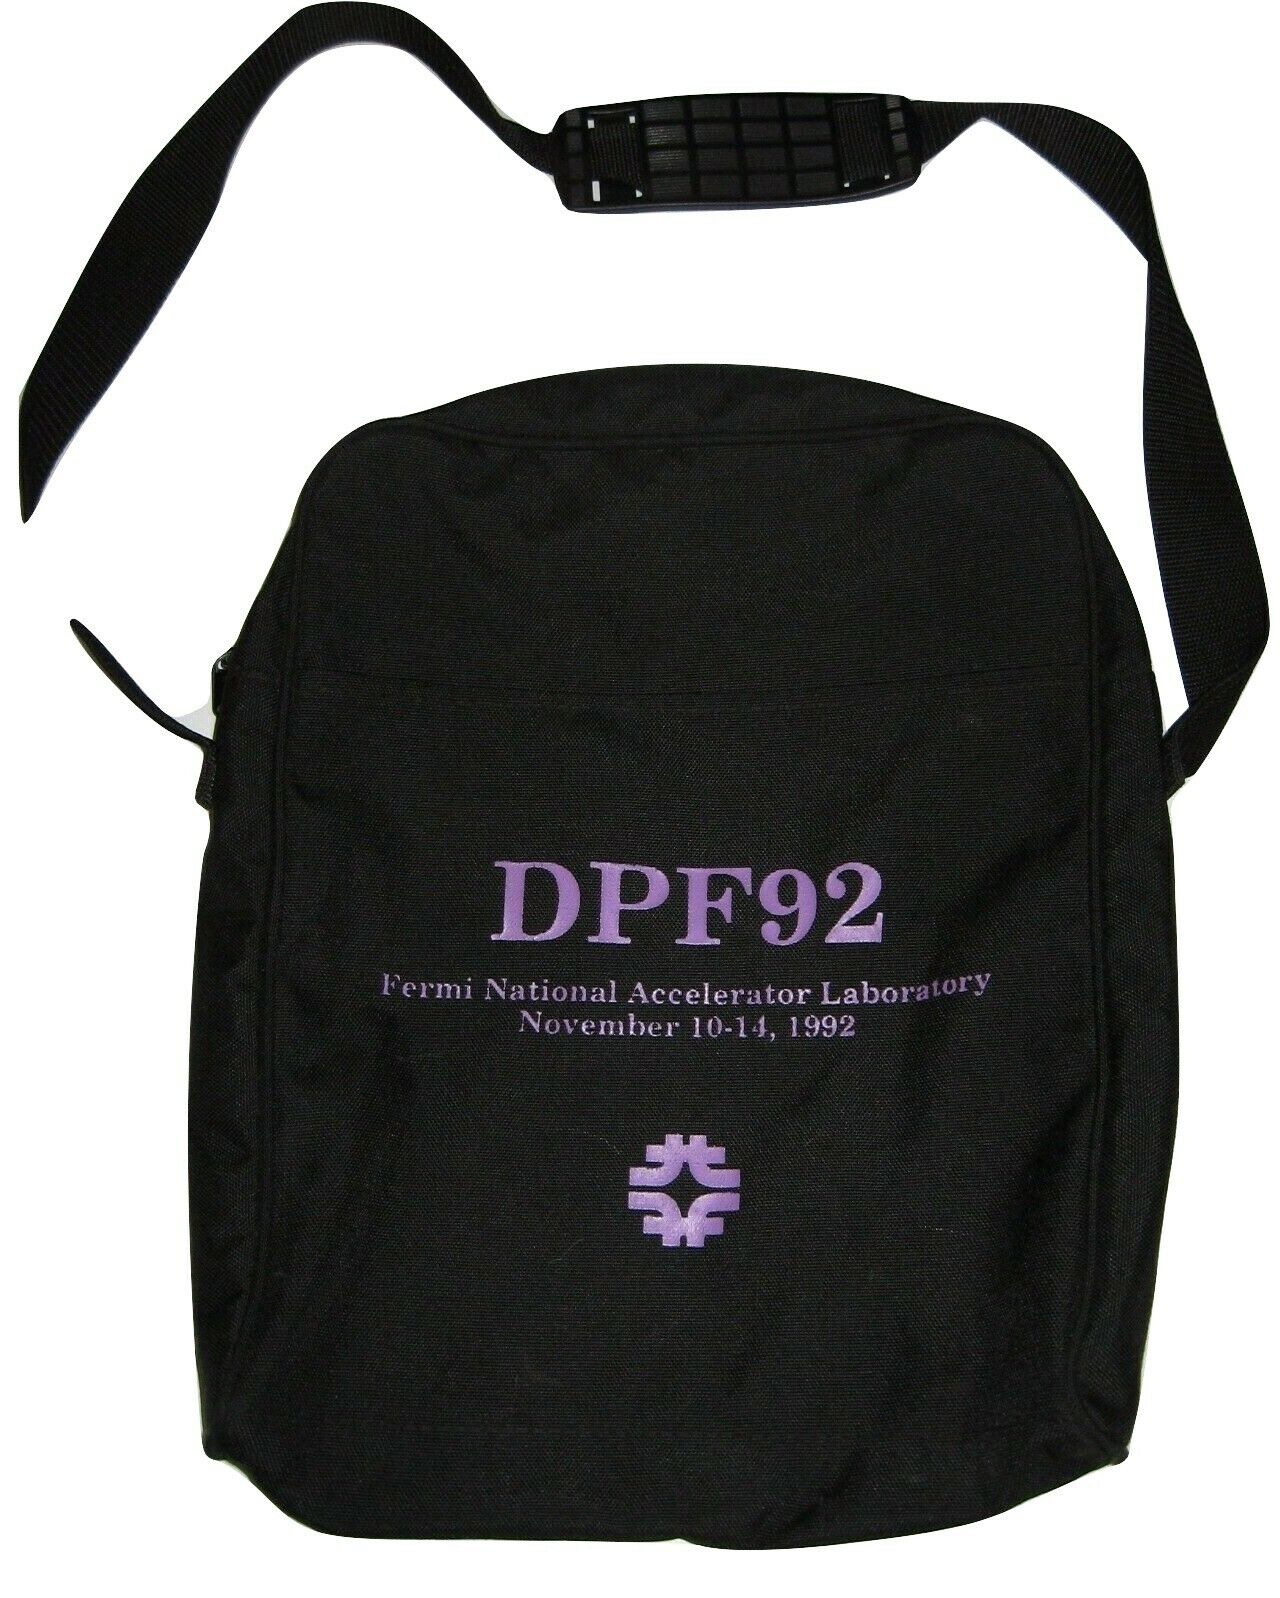 Fermilab DPF 92 document carrier Shoulder Bag November 10-14 1992